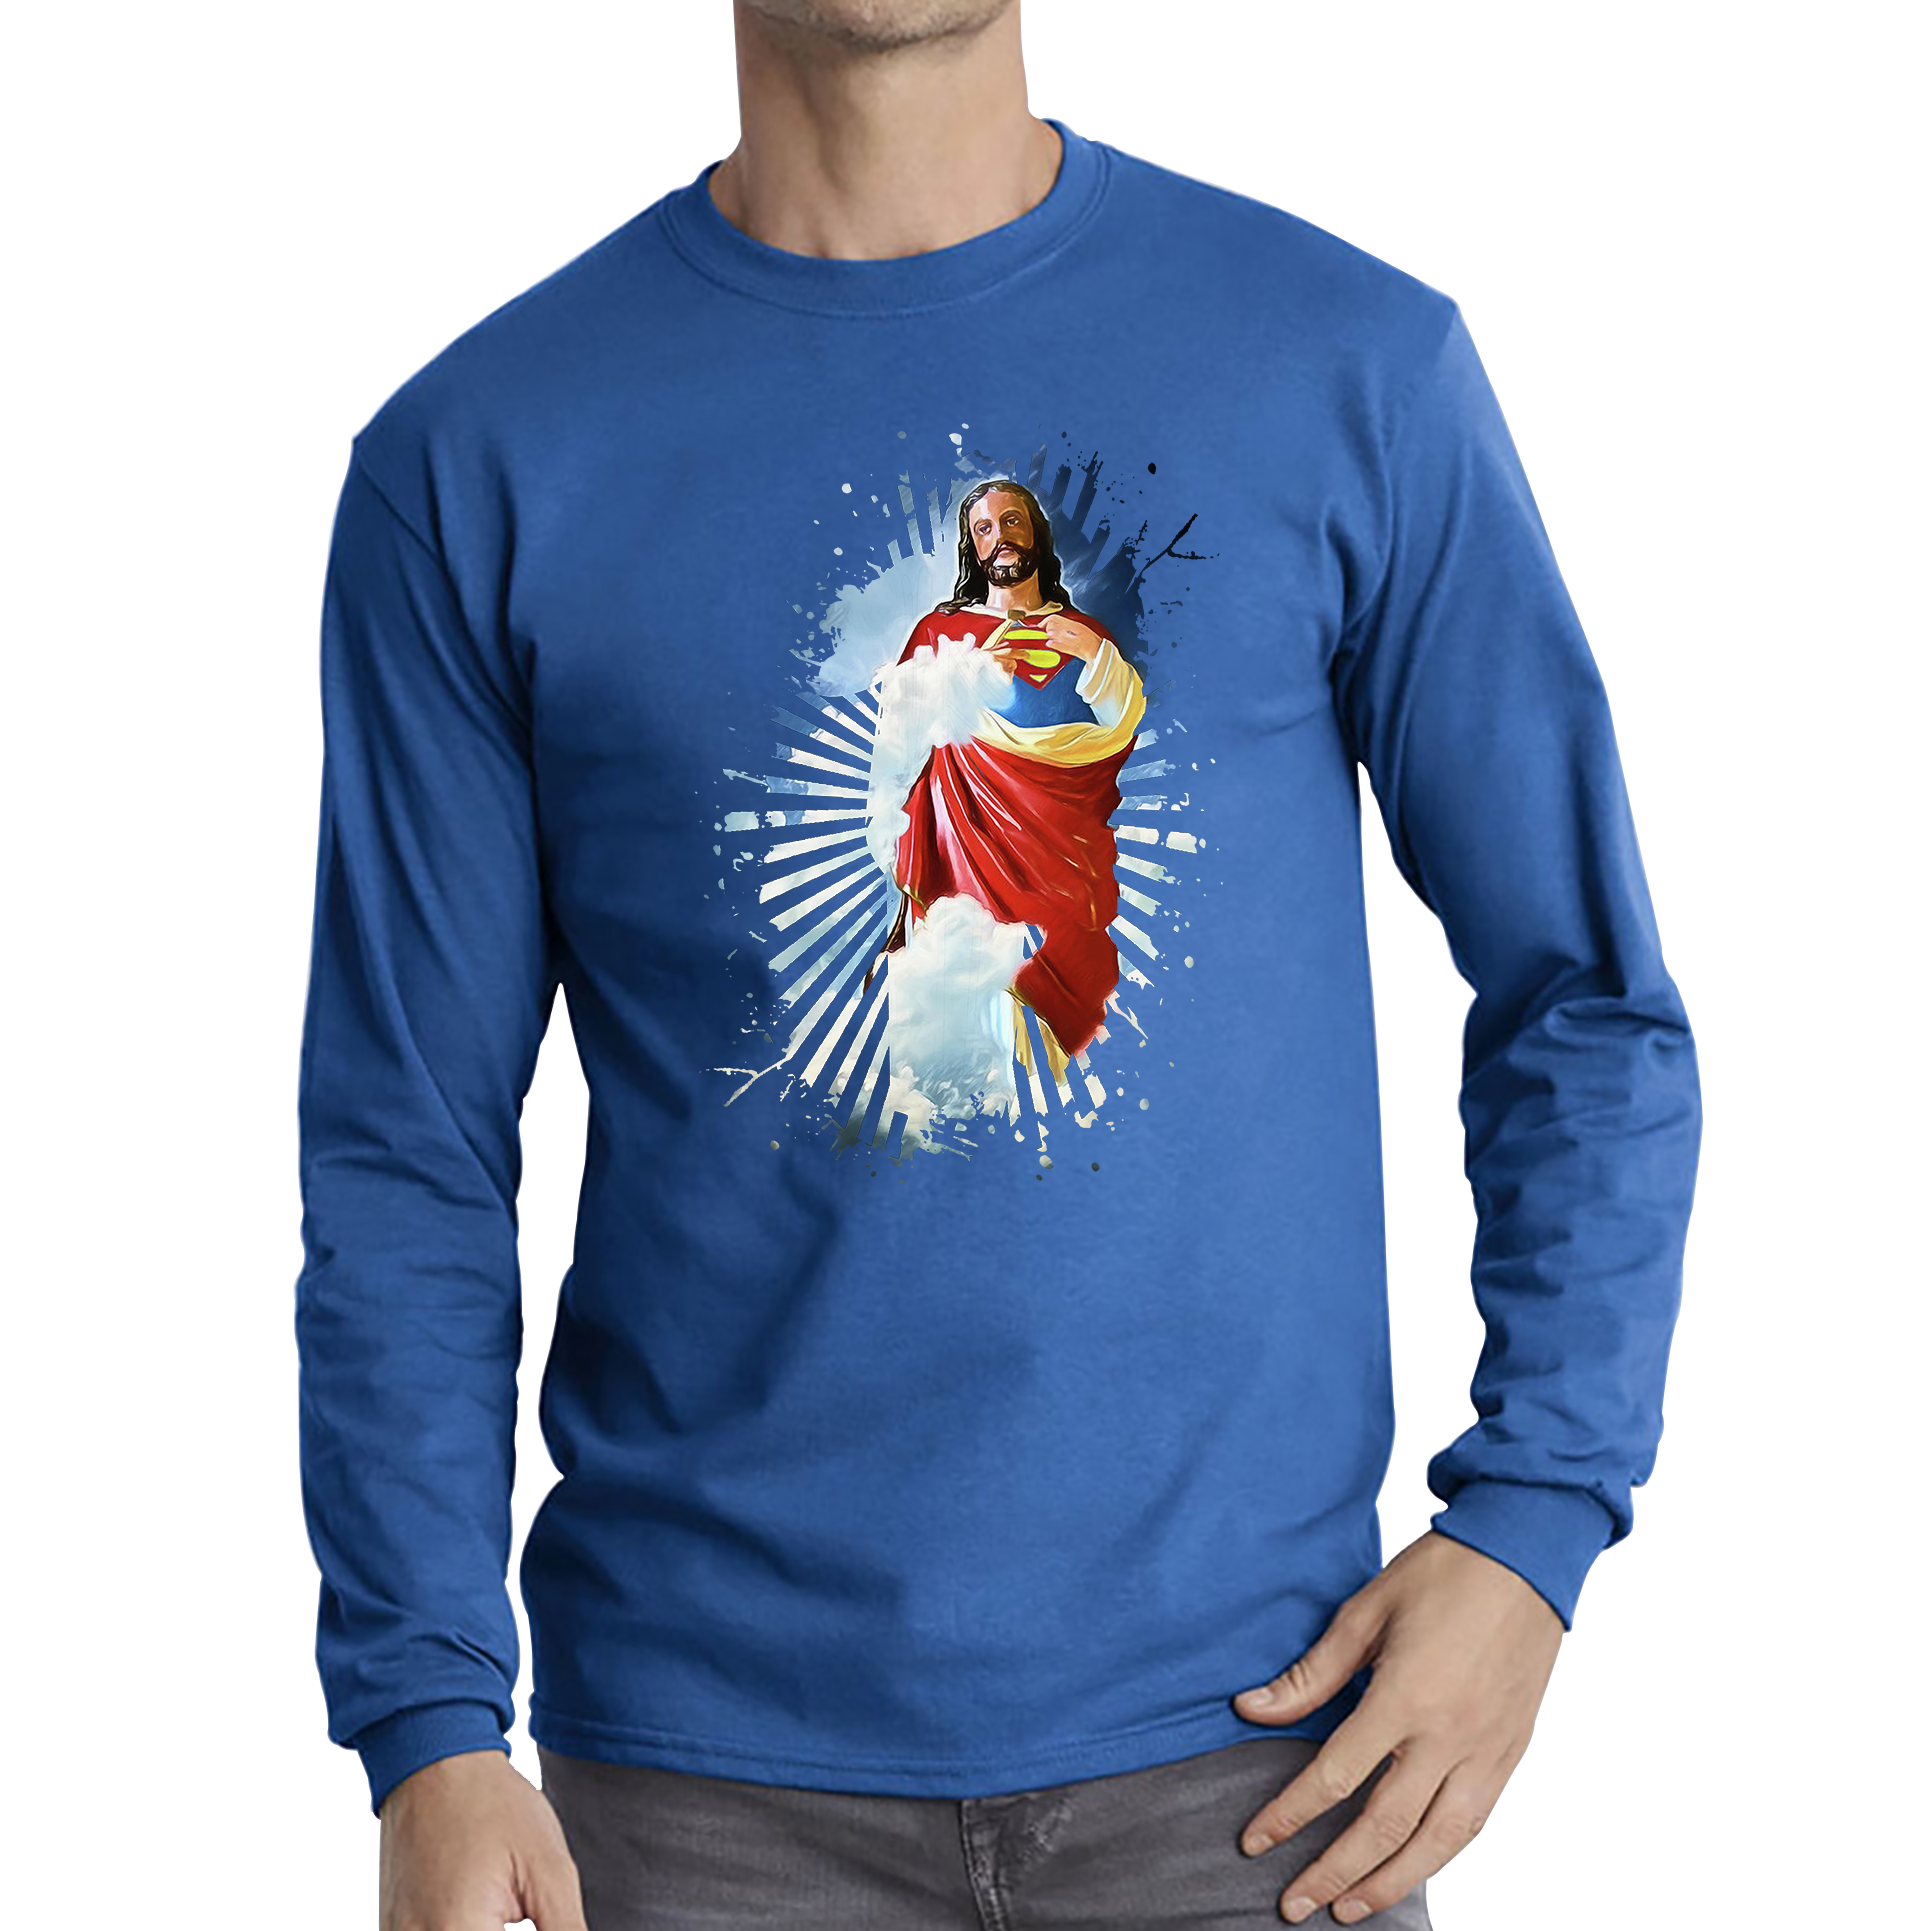 Jesus Christ Superman Shirt Superman Inspired Spoof Avengers Superhero Christian Gift Long Sleeve T Shirt